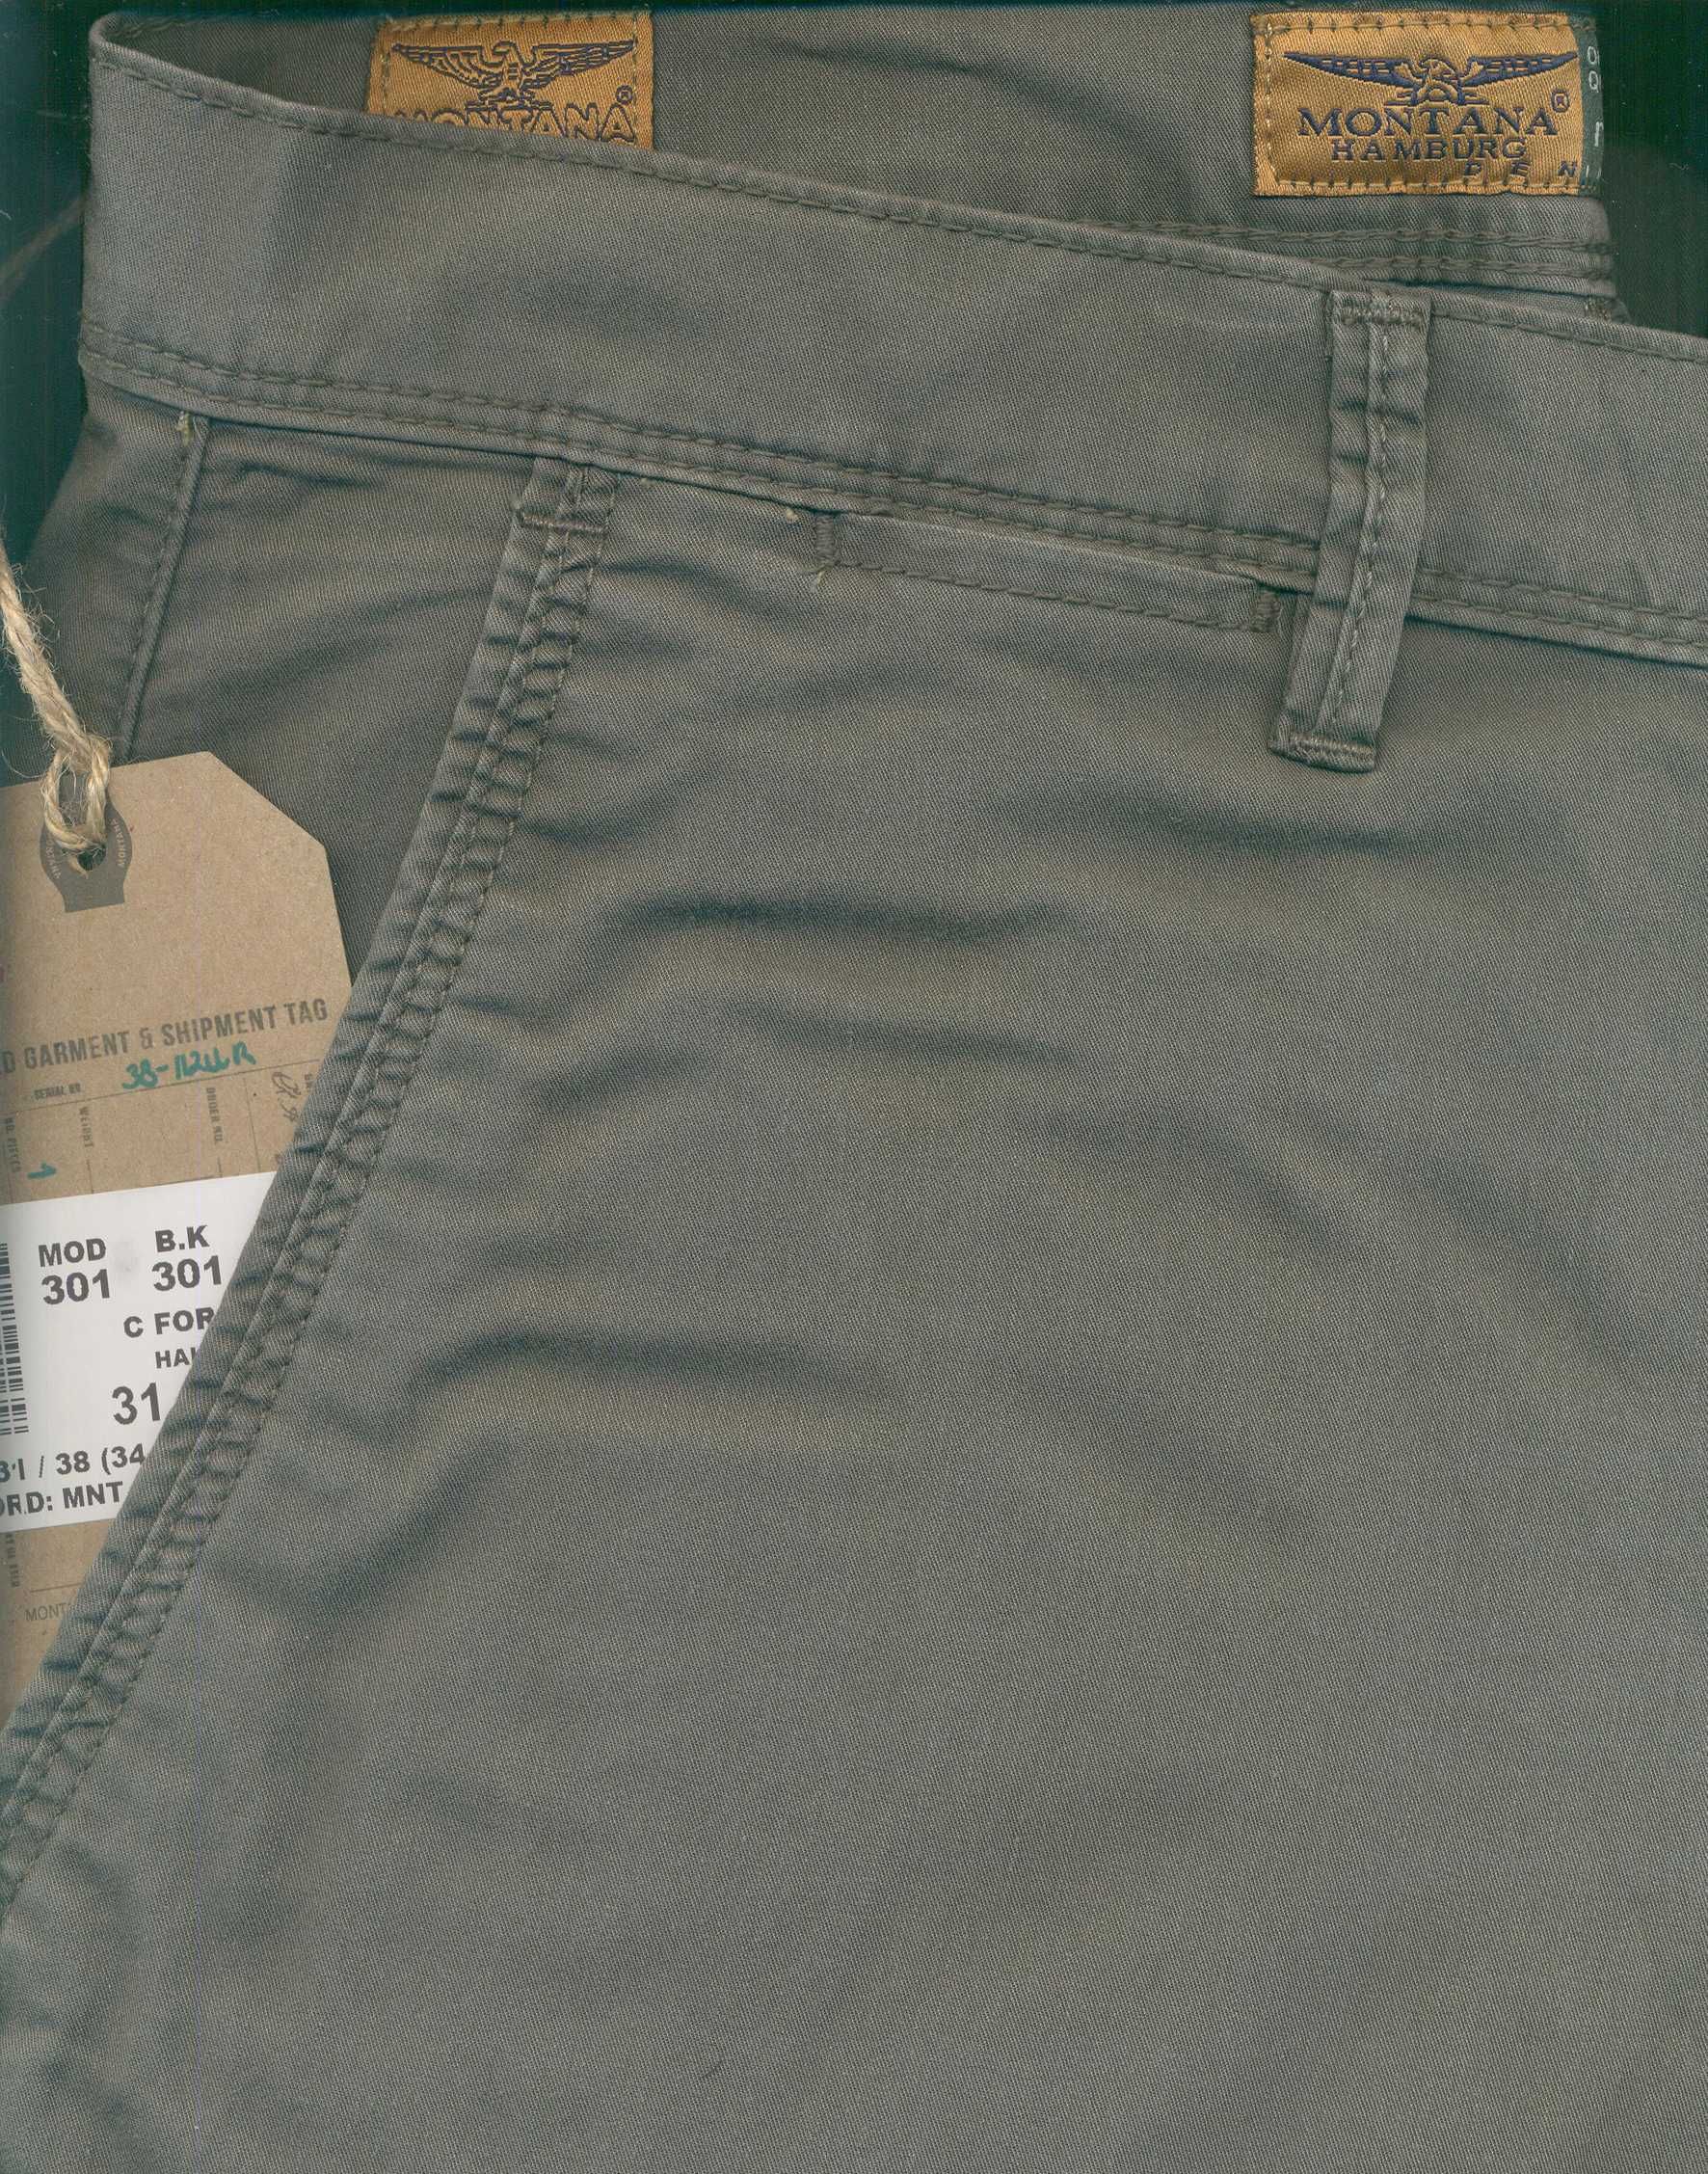 Летние джинсы "Montana" трёх оттенков (хаки, бежевый и оливковый)